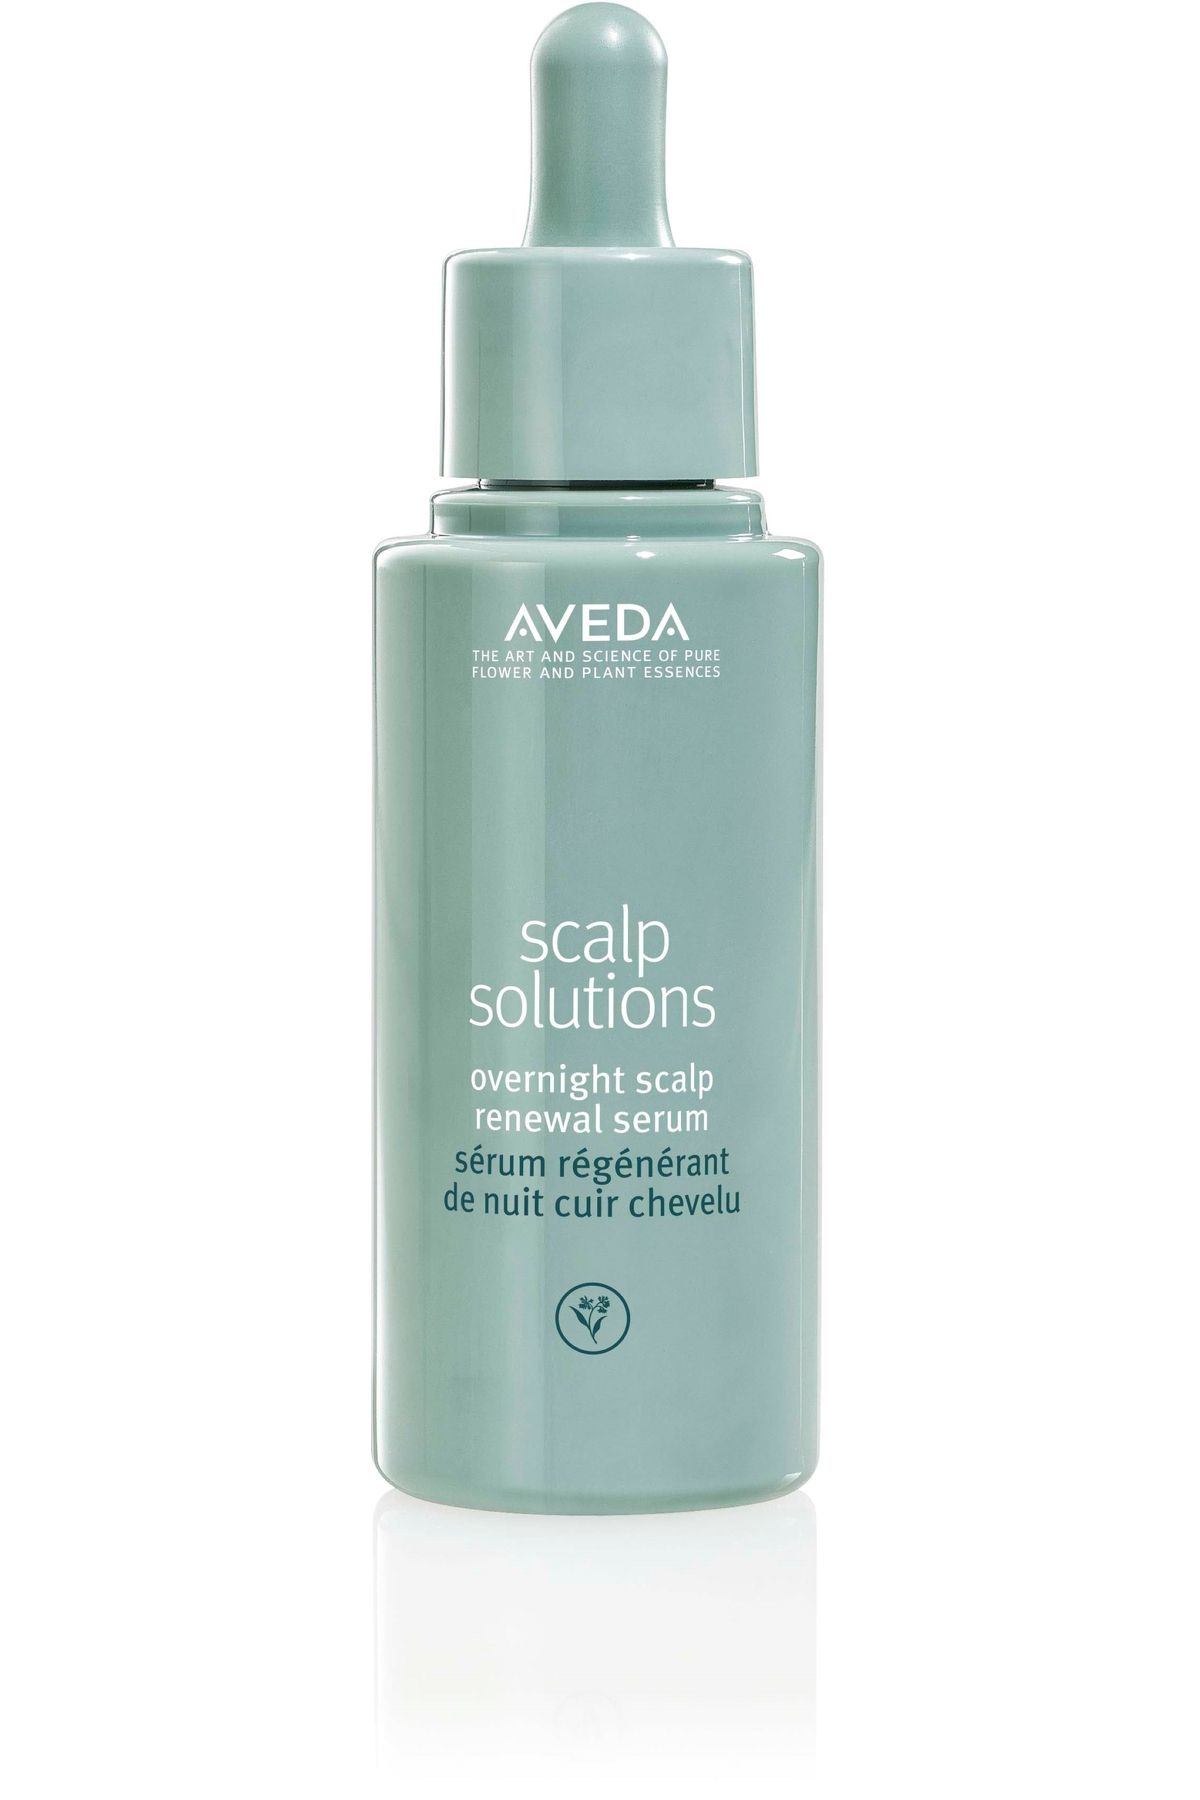 Aveda Scalp Solutions-Boyalı Saçlar İçin Saç Derisi İçin Bakım Şampuan 50 ml 1.7 fl oz CYT9746616166